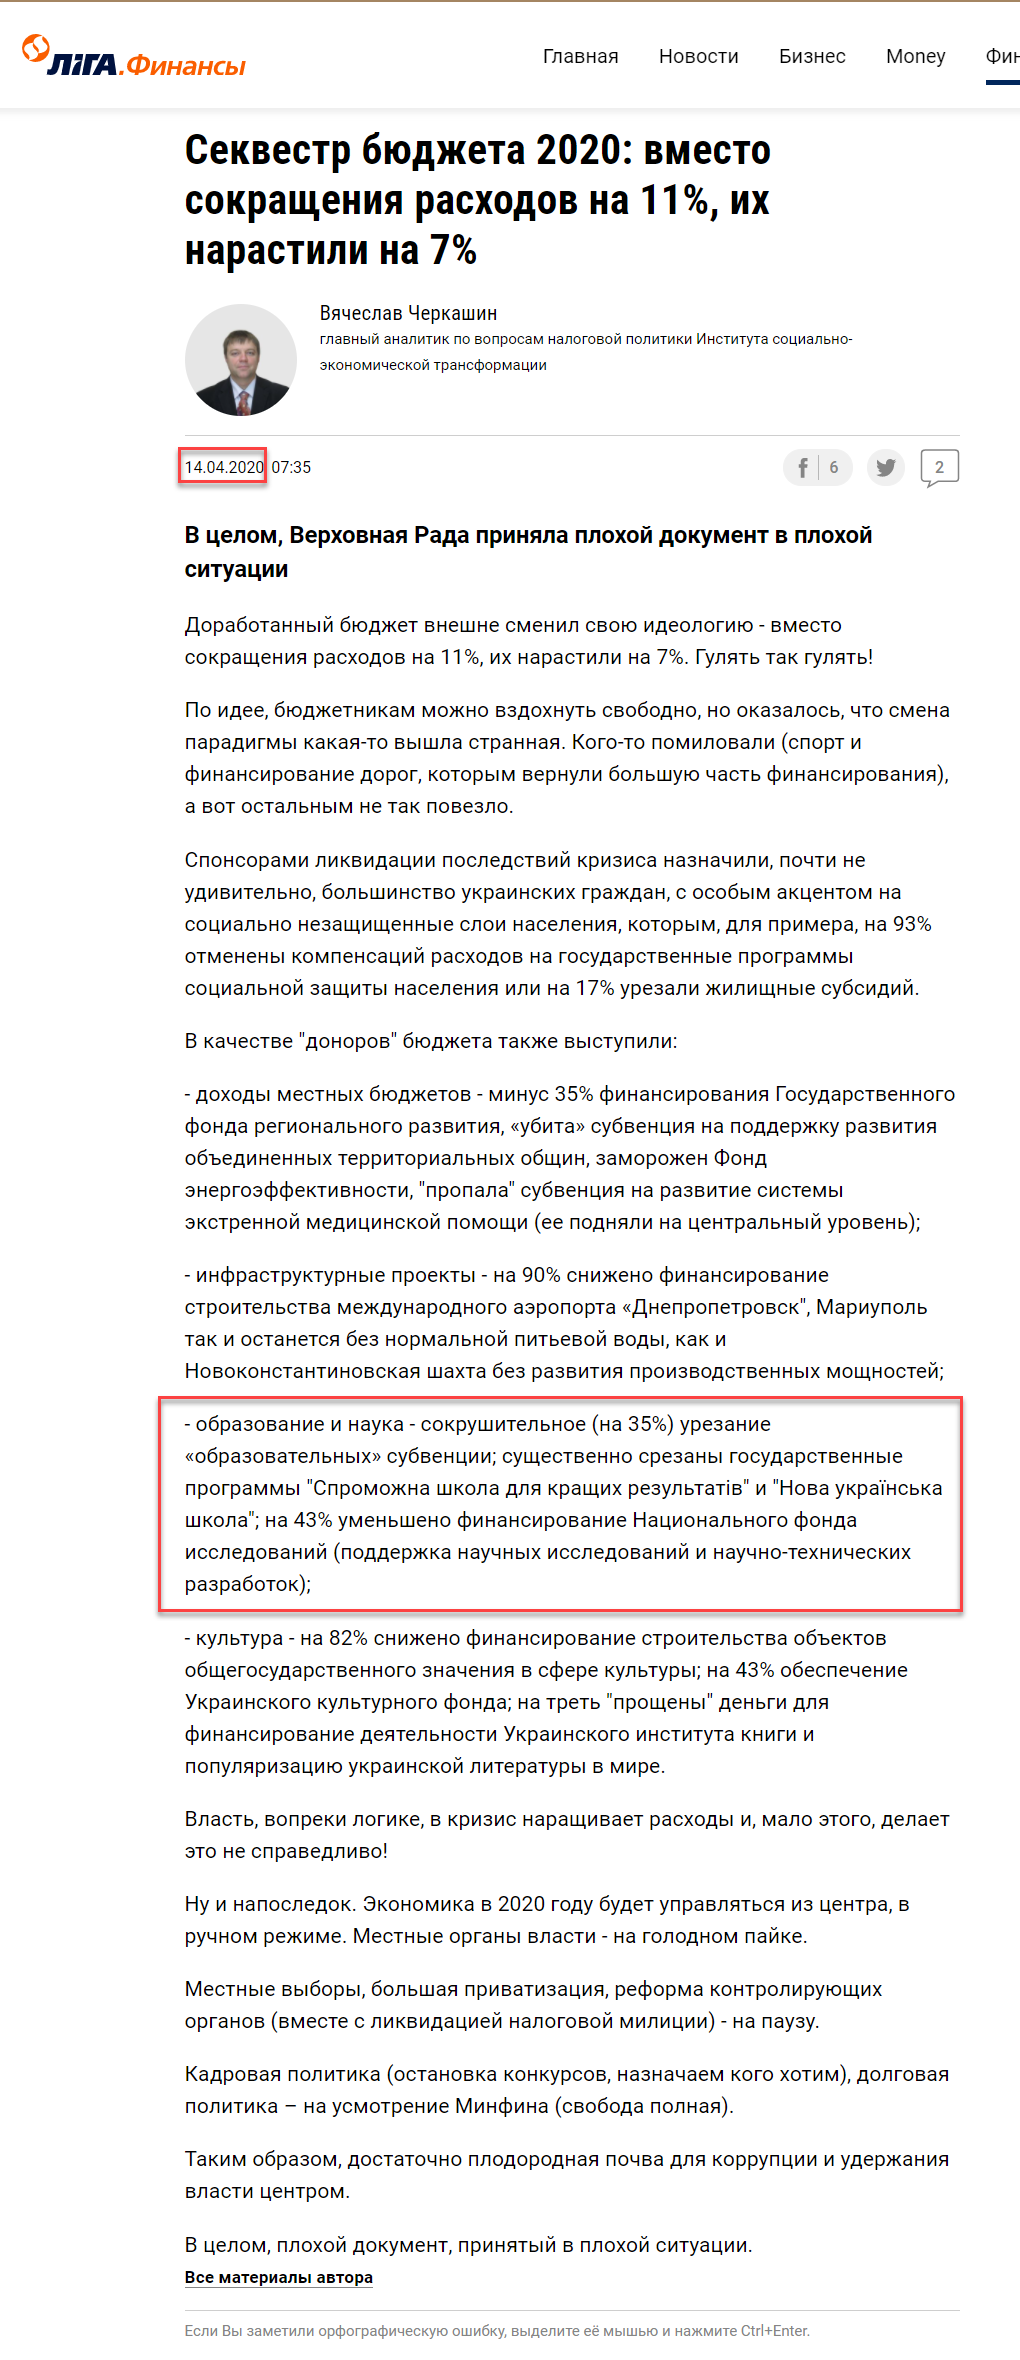 https://finance.liga.net/ekonomika/opinion/chasha-smerti-kak-tserkov-boretsya-s-koronavirusom-i-opazdyvaet